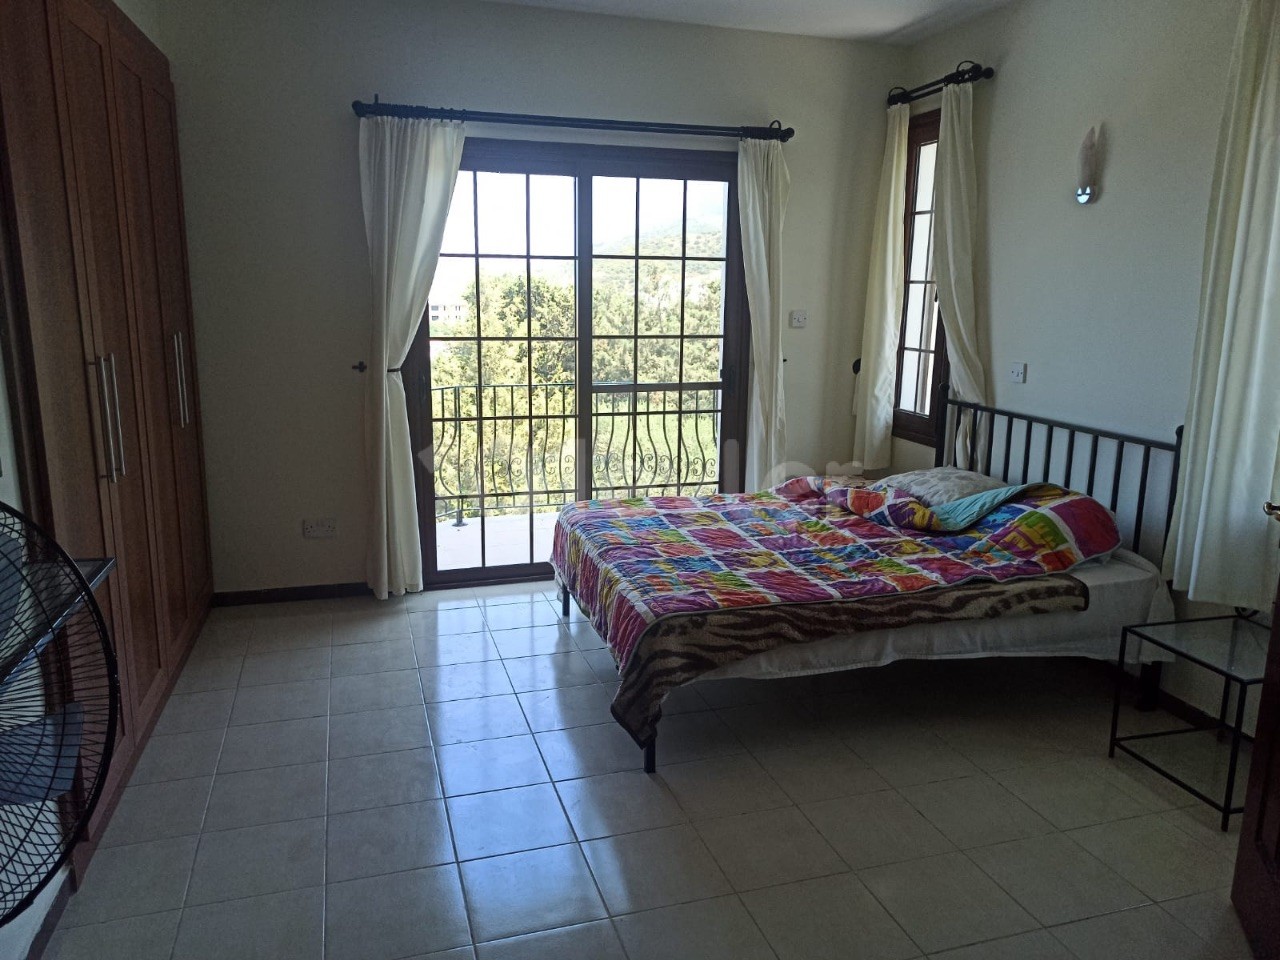 5 Bedroom Villa for Sale in Kyrenia Edremit ** 